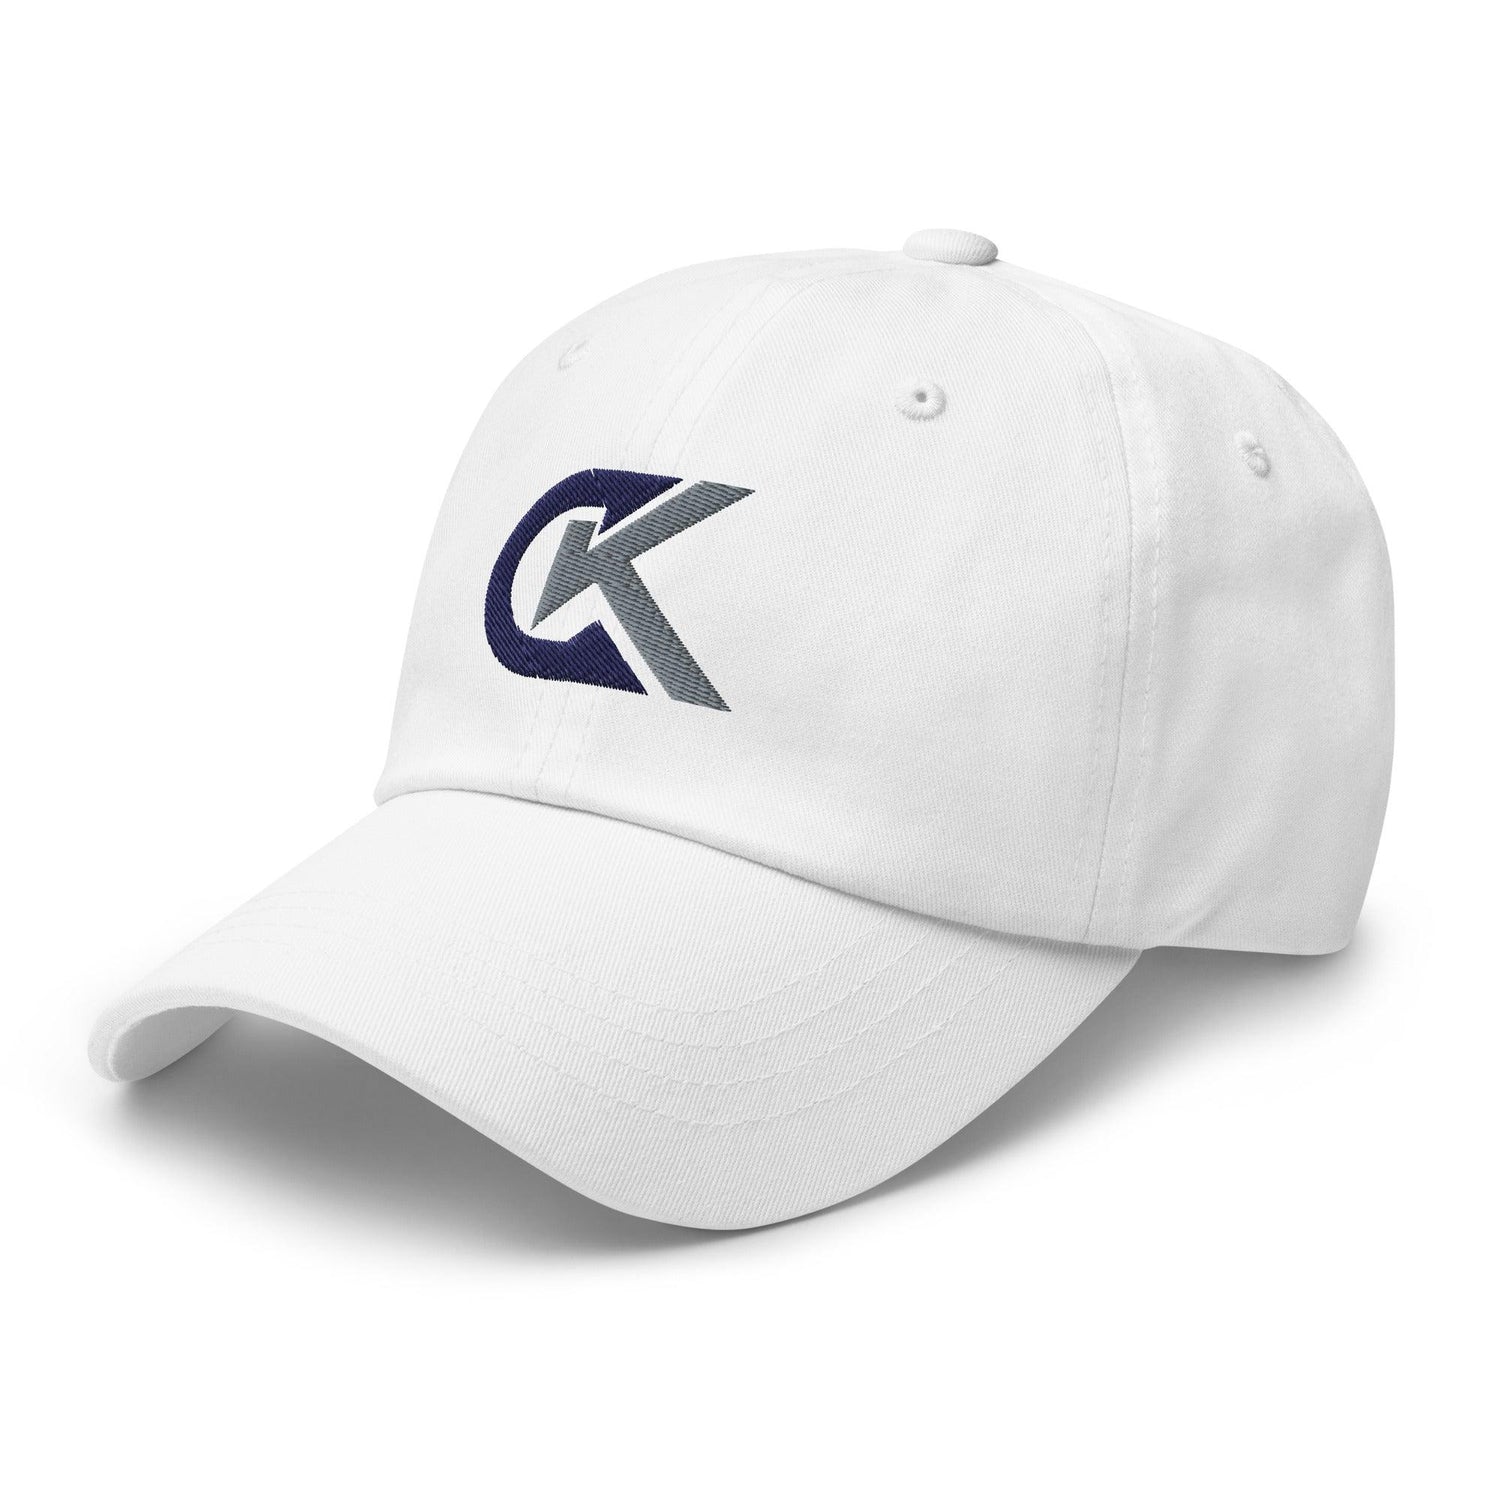 Corey Kluber "Elite" hat - Fan Arch